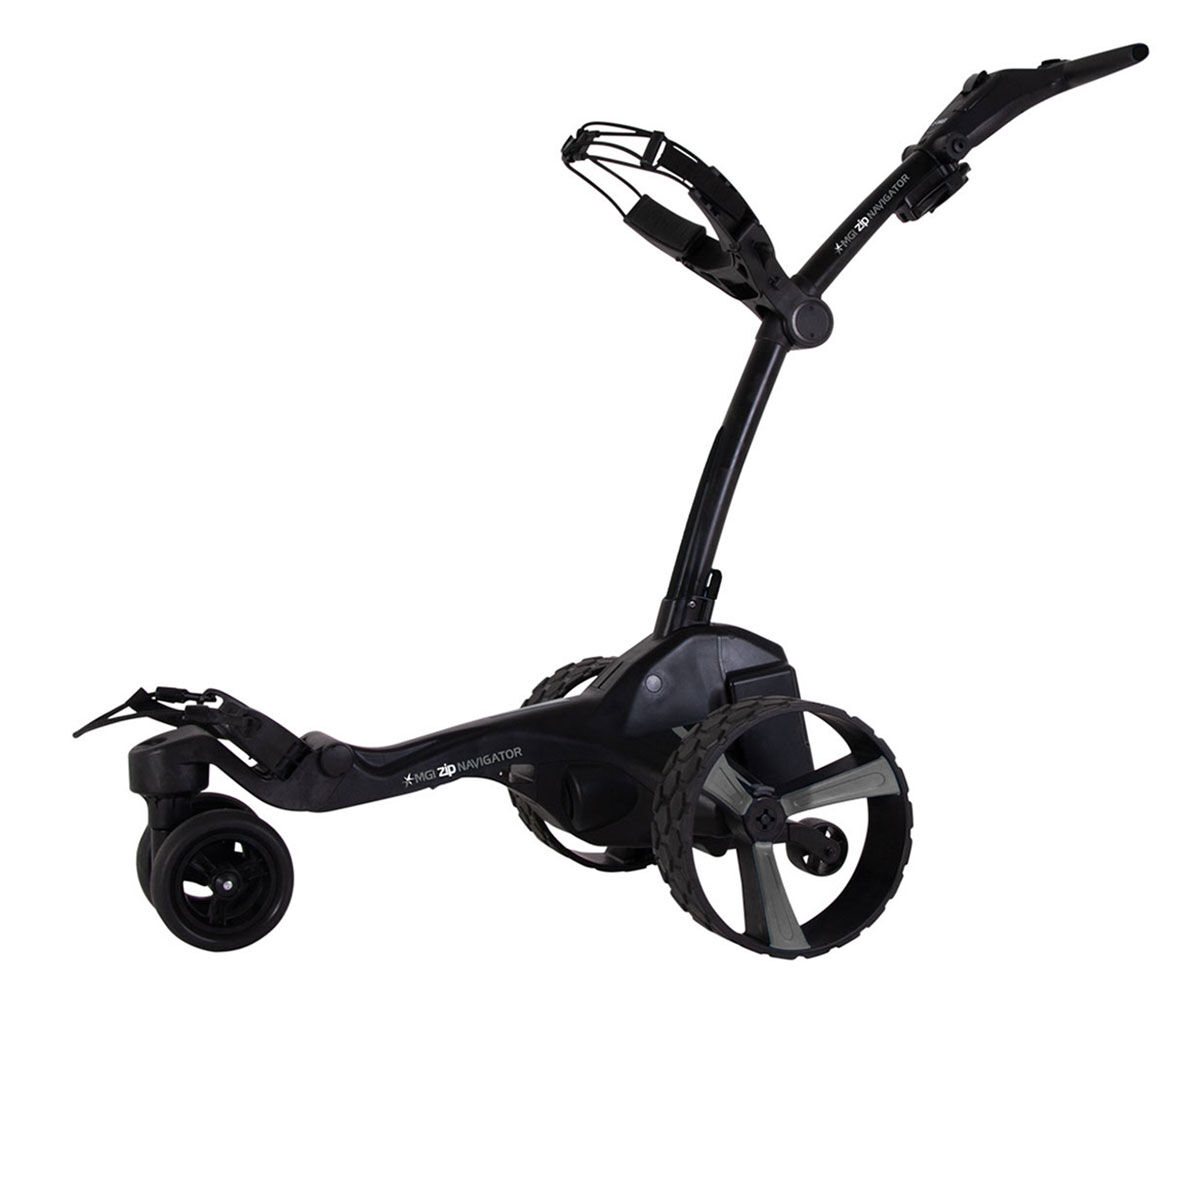 MGI Golf Black Zip Navigator Remote Control Lithium Electric Golf Trolley, Size: 27.55x18.5x16.5"  | American Golf von MGI Golf